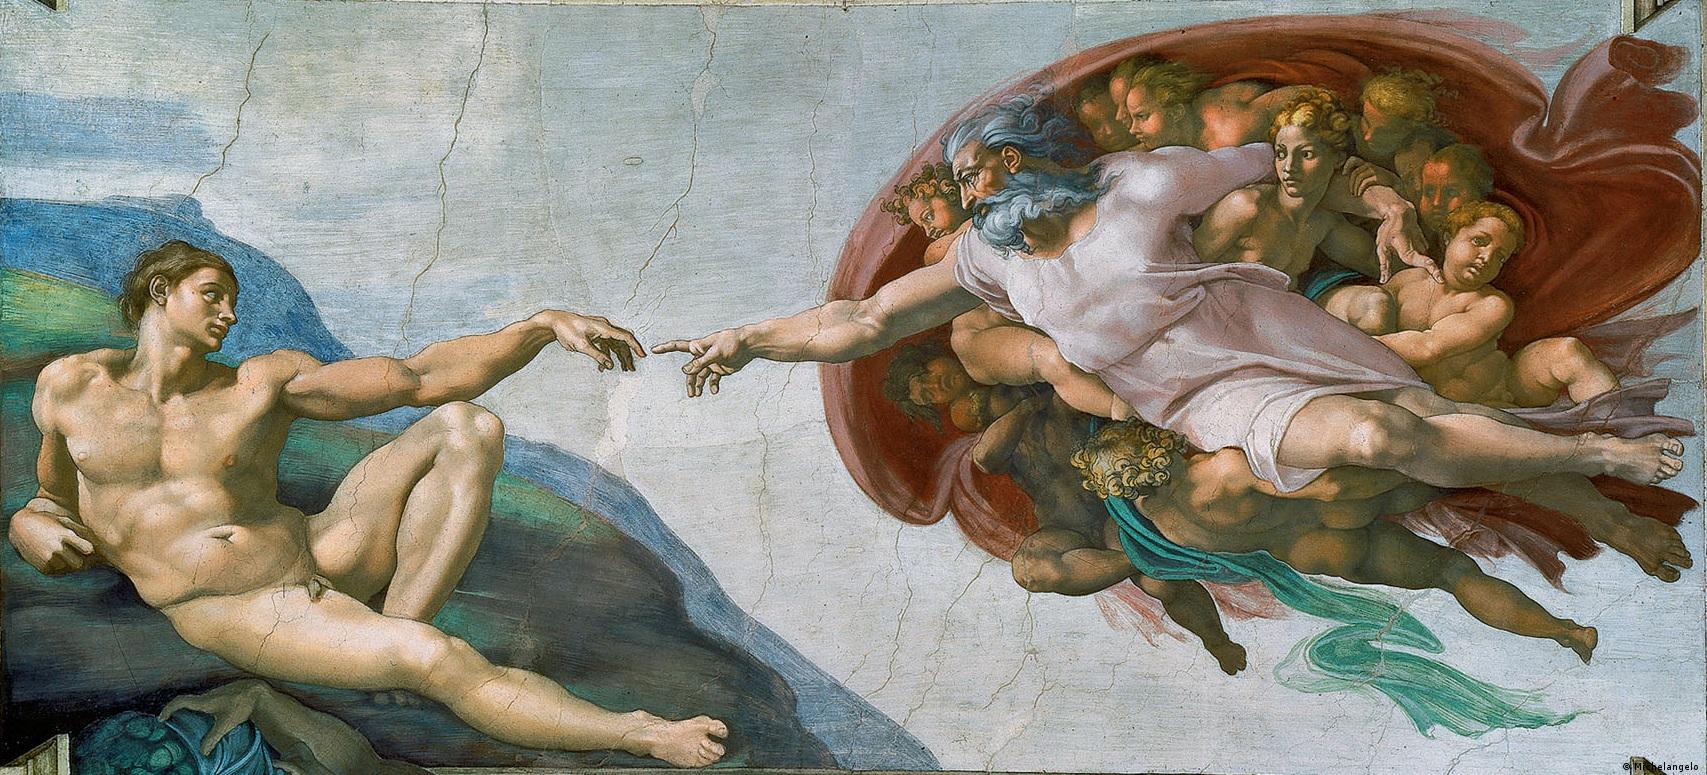 Сотворение Адама (ок. 1511) - фреска Микеланджело в Сикстинской капелле в Ватикане